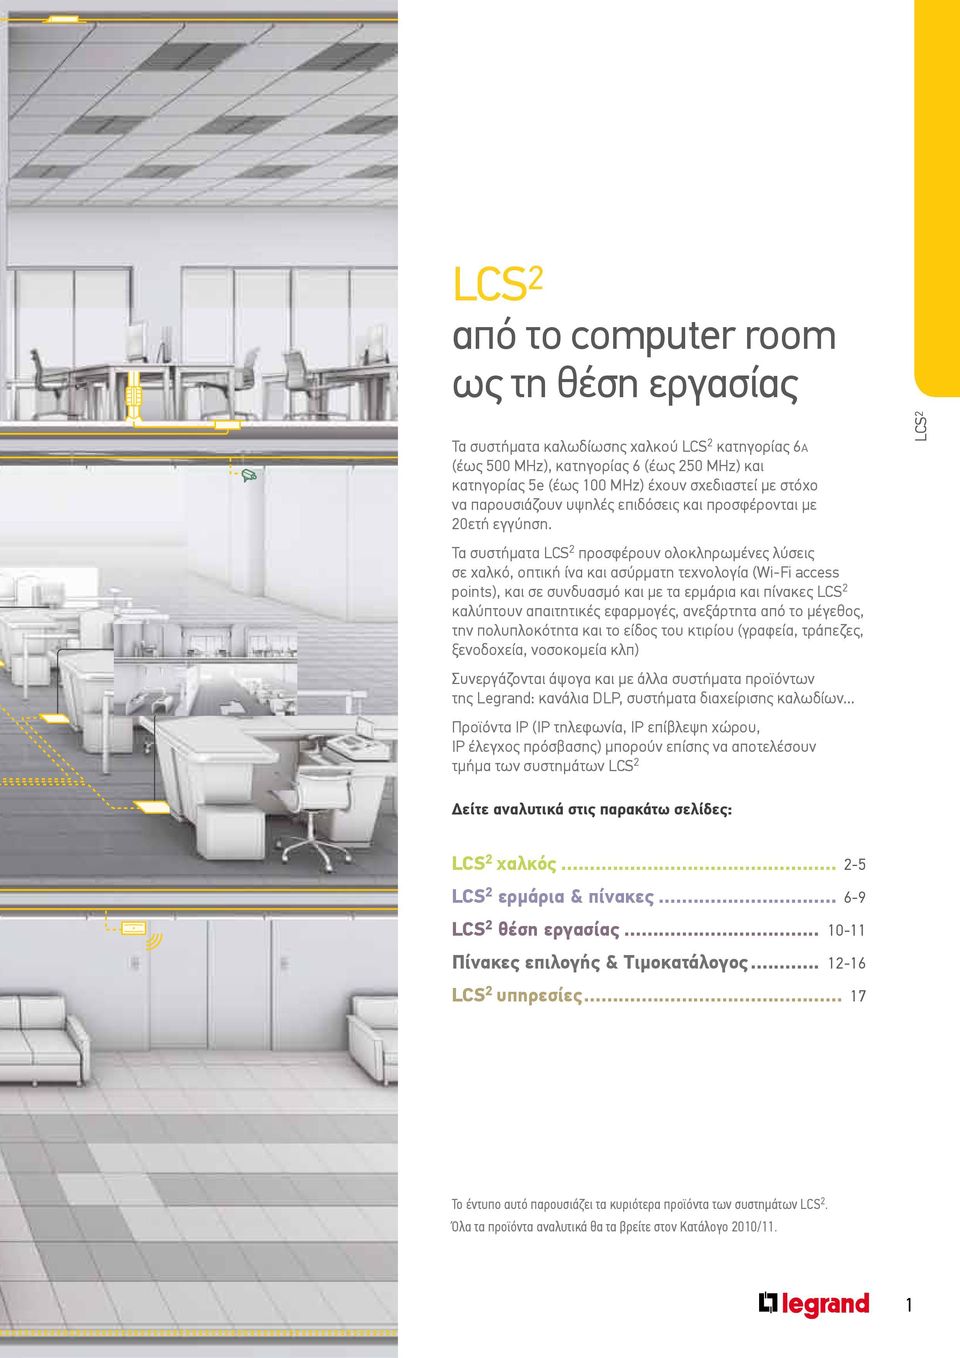 Τα συστήματα LCS 2 προσφέρουν ολοκληρωμένες λύσεις σε χαλκό, οπτική ίνα και ασύρματη τεχνολογία (Wi-Fi access points), και σε συνδυασμό και με τα ερμάρια και πίνακες LCS 2 καλύπτουν απαιτητικές